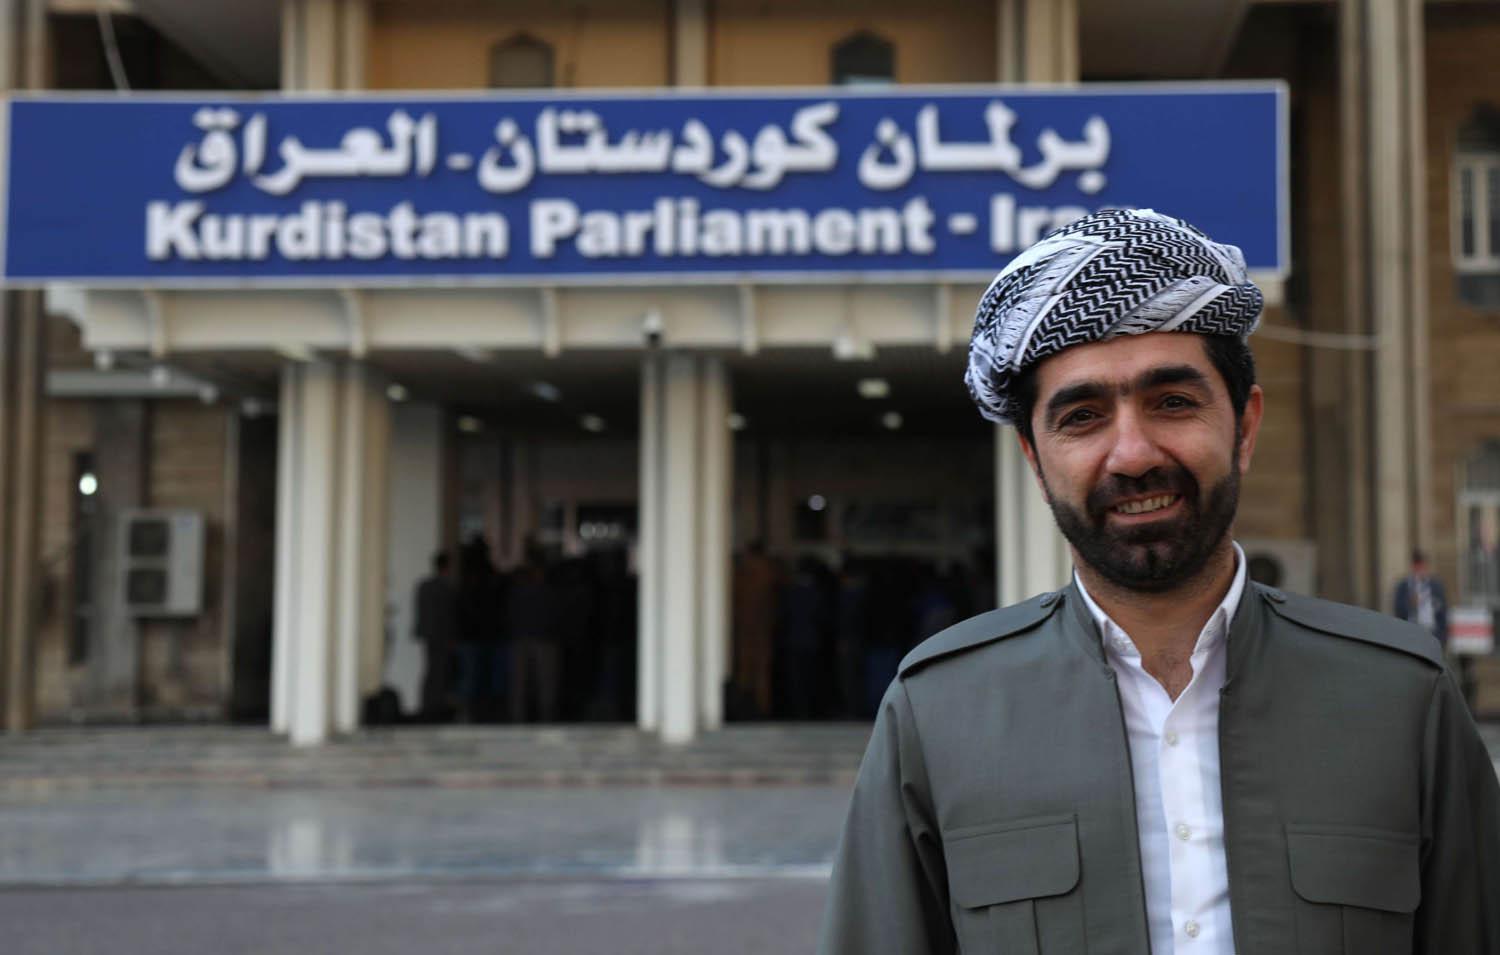 النائب ساران هركي أمام مبنى البرلمان الكردي العراقي